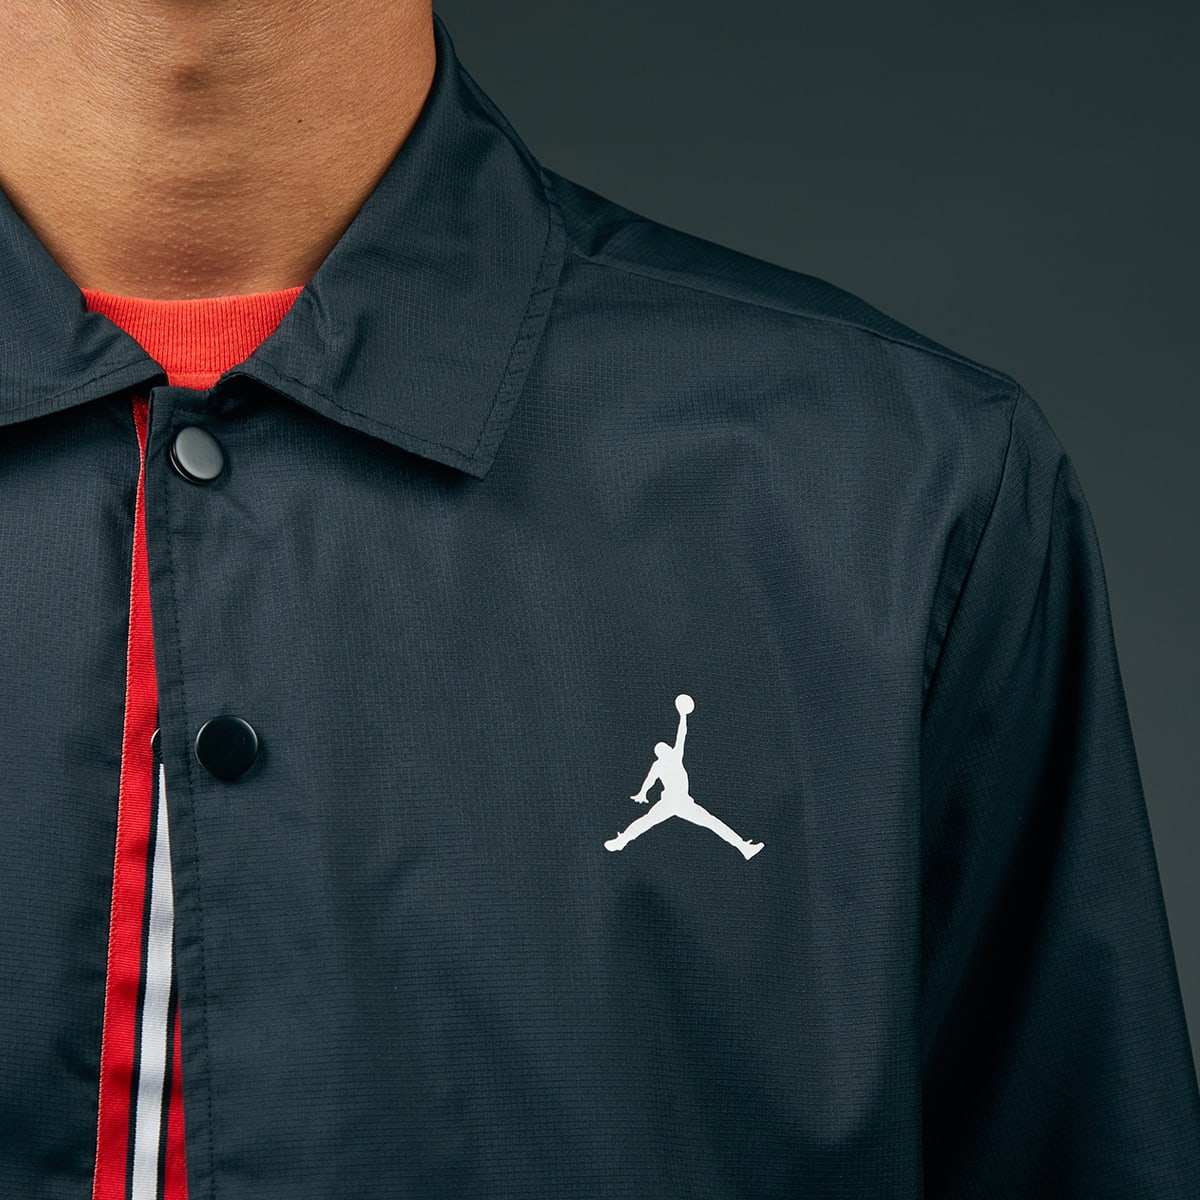 Jordan x Paris Saint-Germain Coach Jacket (Black & White) | END. Launches